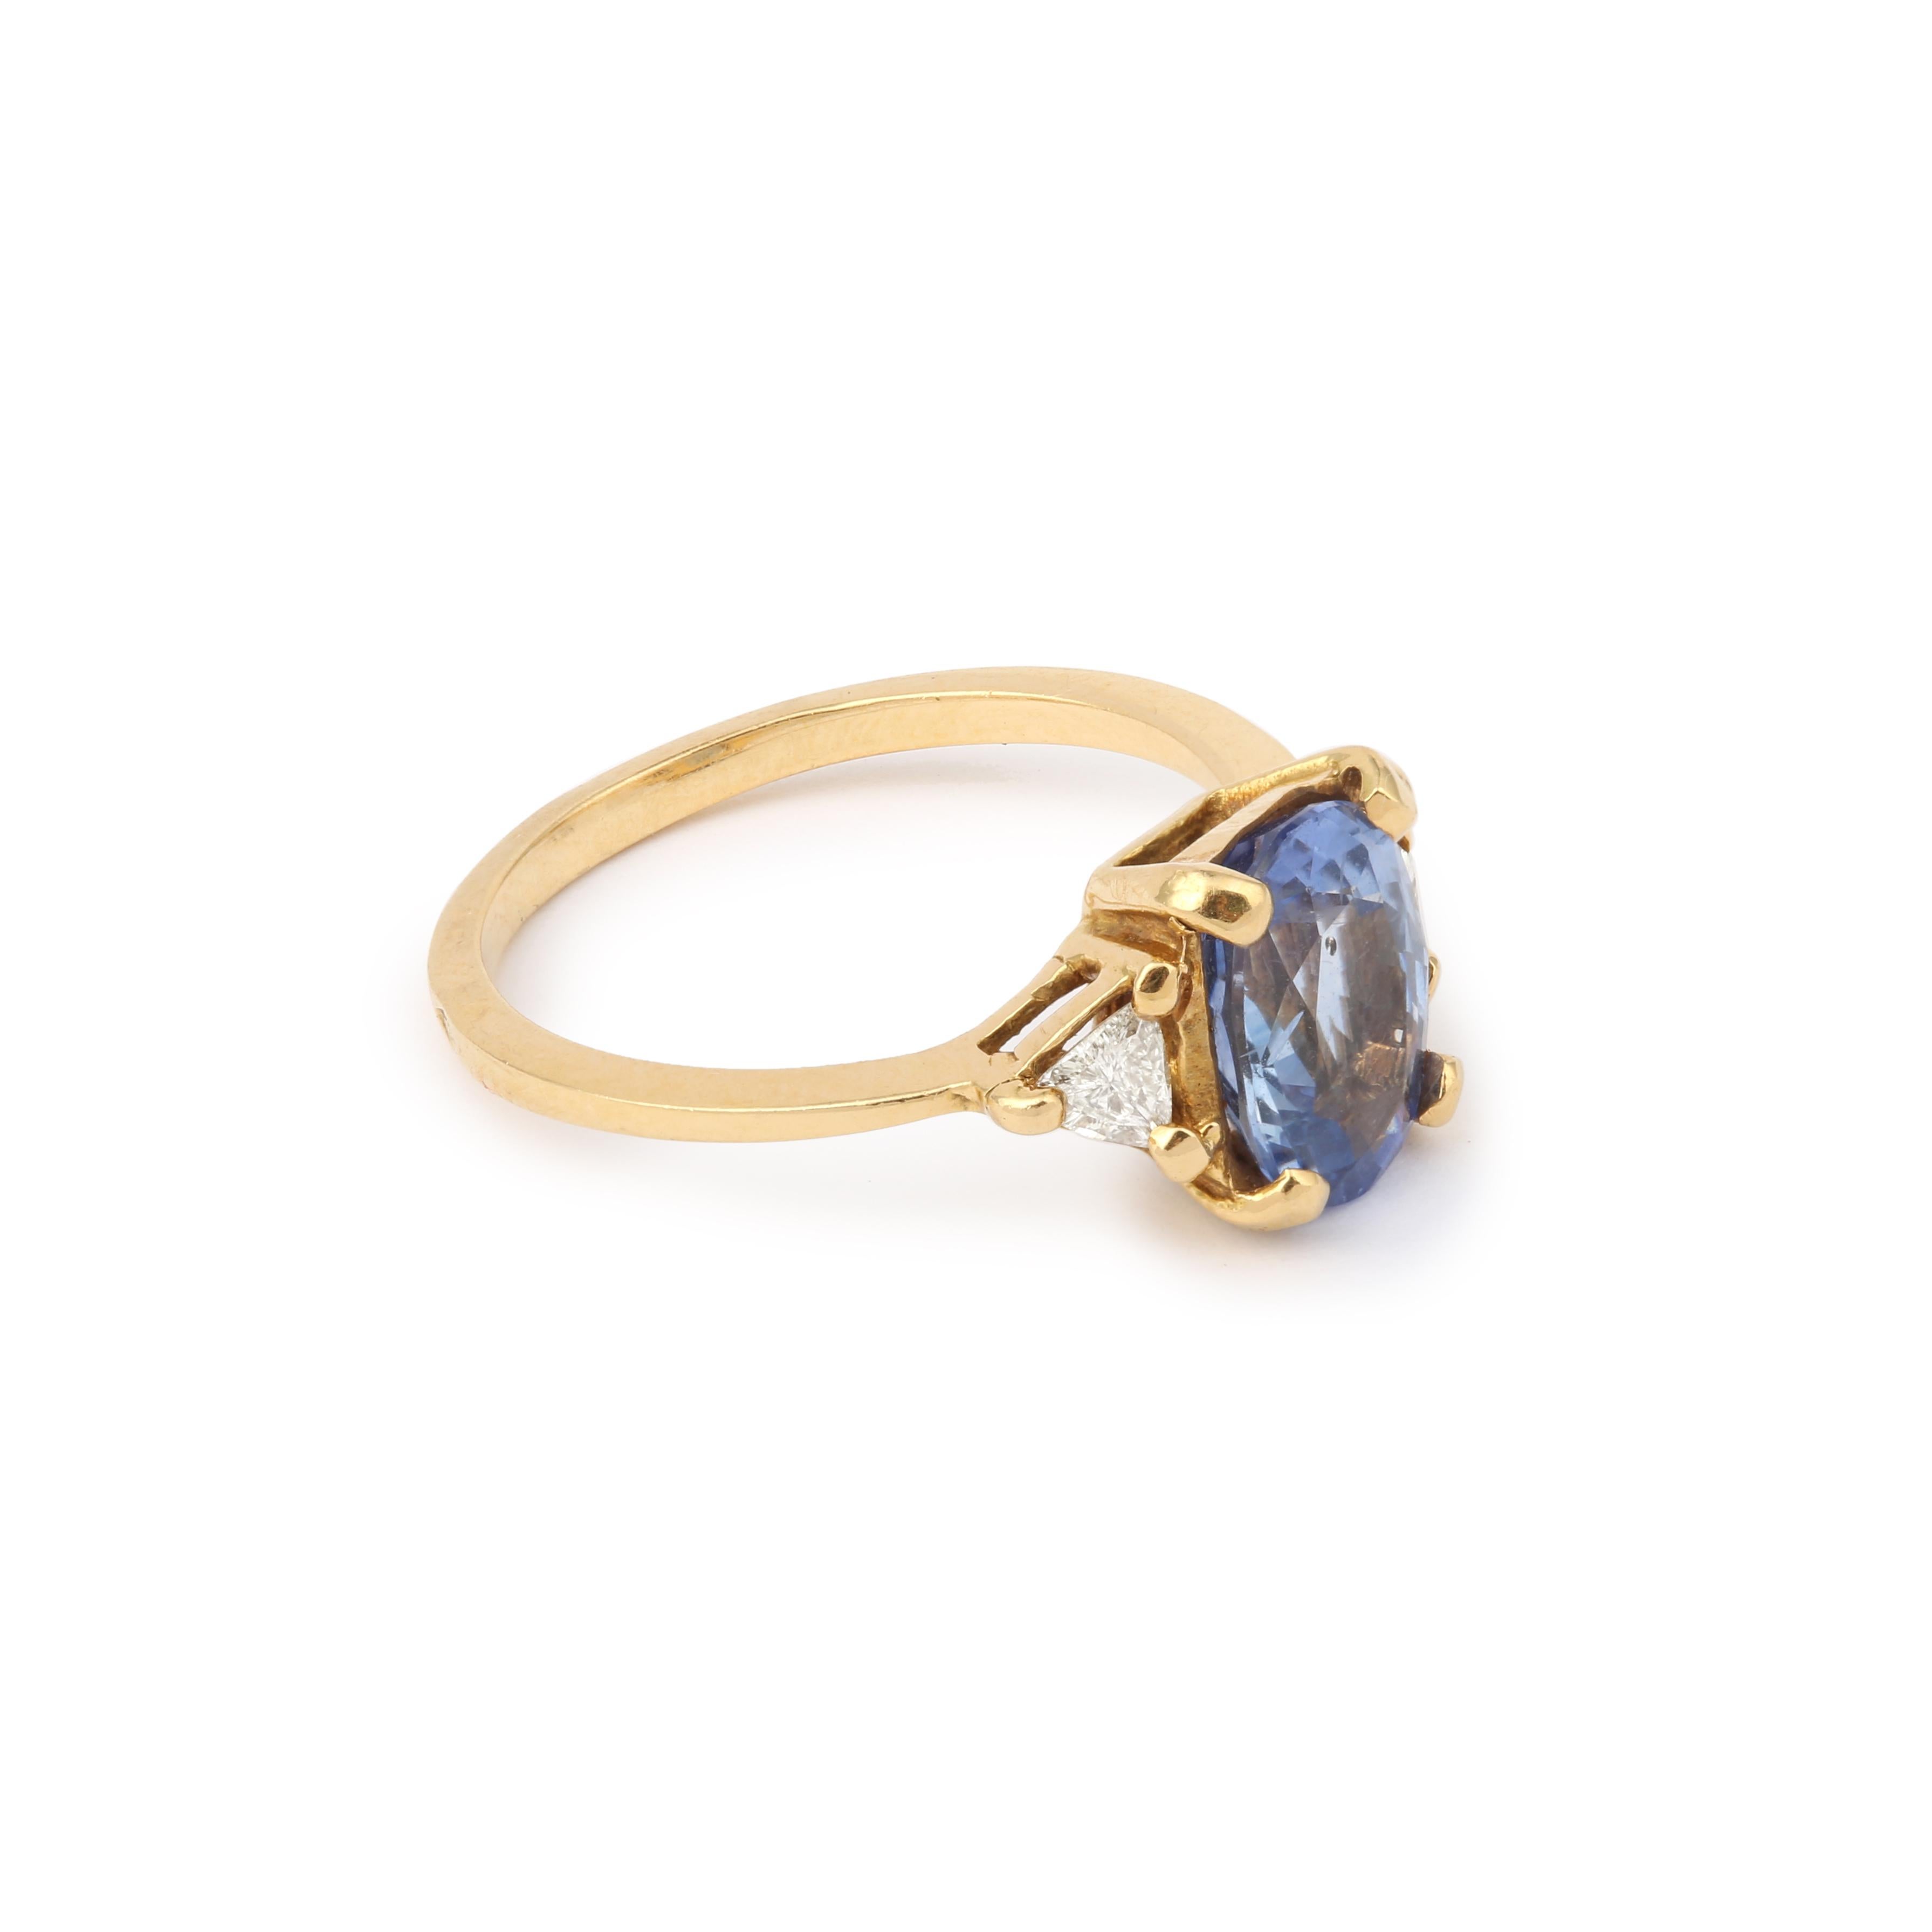 Ring aus Gelbgold mit einem ovalen Saphir in der Mitte, besetzt mit zwei Troïdias-Diamanten.

Geschätztes Gewicht des Saphirs: 3.20 Karat

Geschätztes Gesamtgewicht der Diamanten: 0,30 Karat

Abmessungen: 10,29 x 15,83 x 6,01 mm (0,405 x 0,623 x